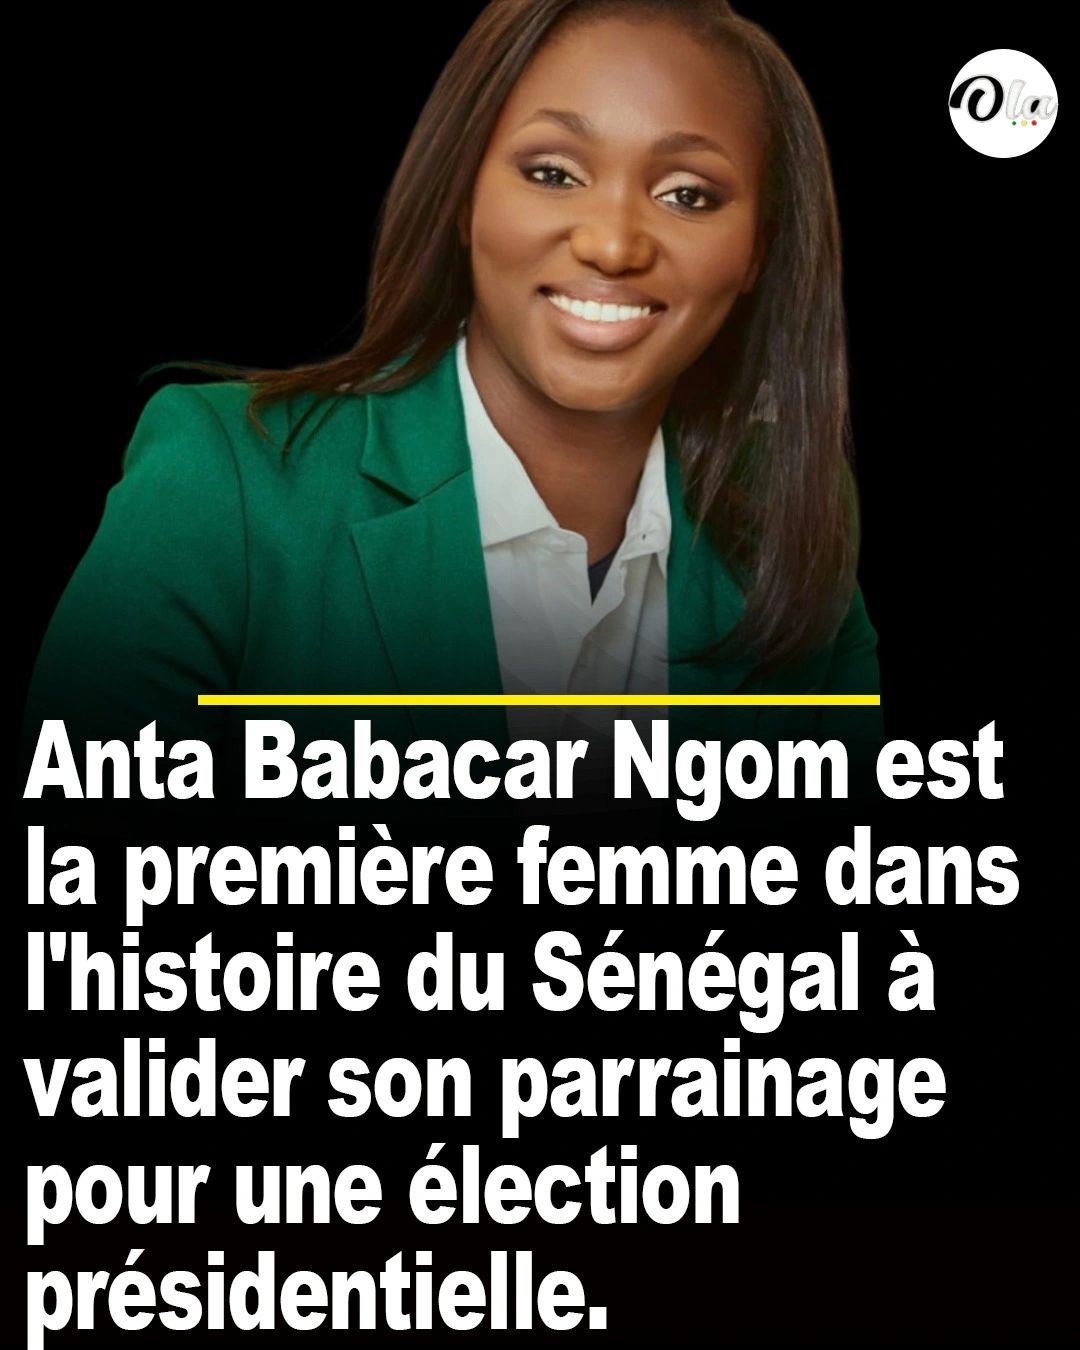 Anta Babacar Ngom, première femme dans l'histoire du Sénégal à valider son parrainage pour une élection présidentielle.